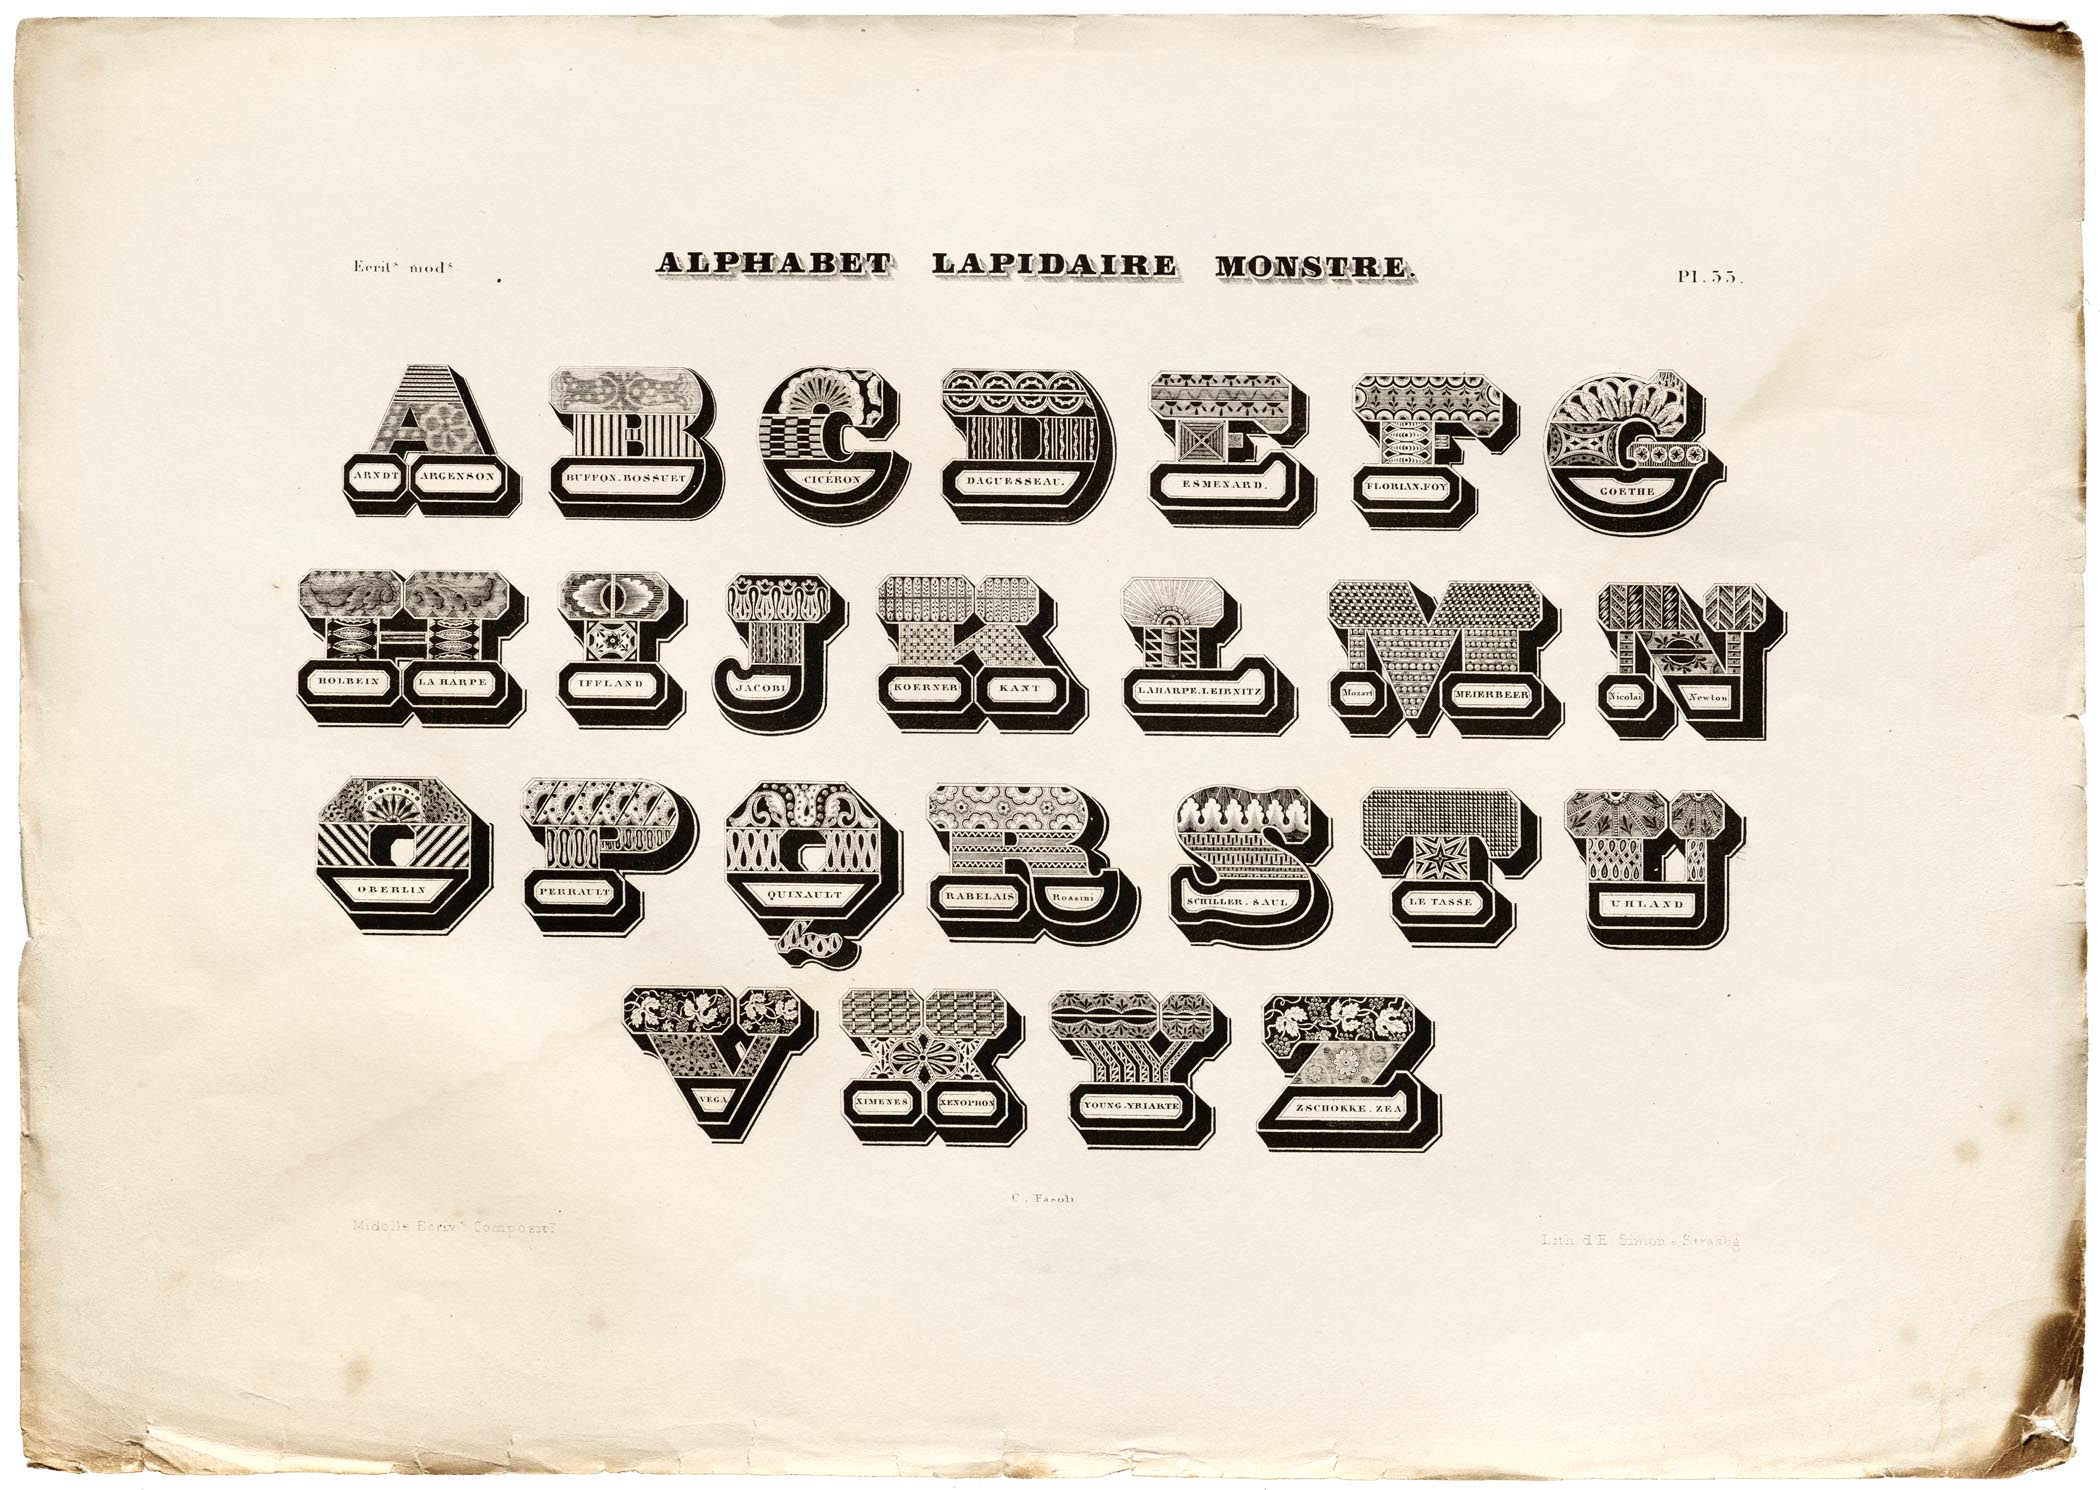 Jean Midolle, Alphabet Lapidaire Monstre, Emile Simon fils press, France, 1835. 